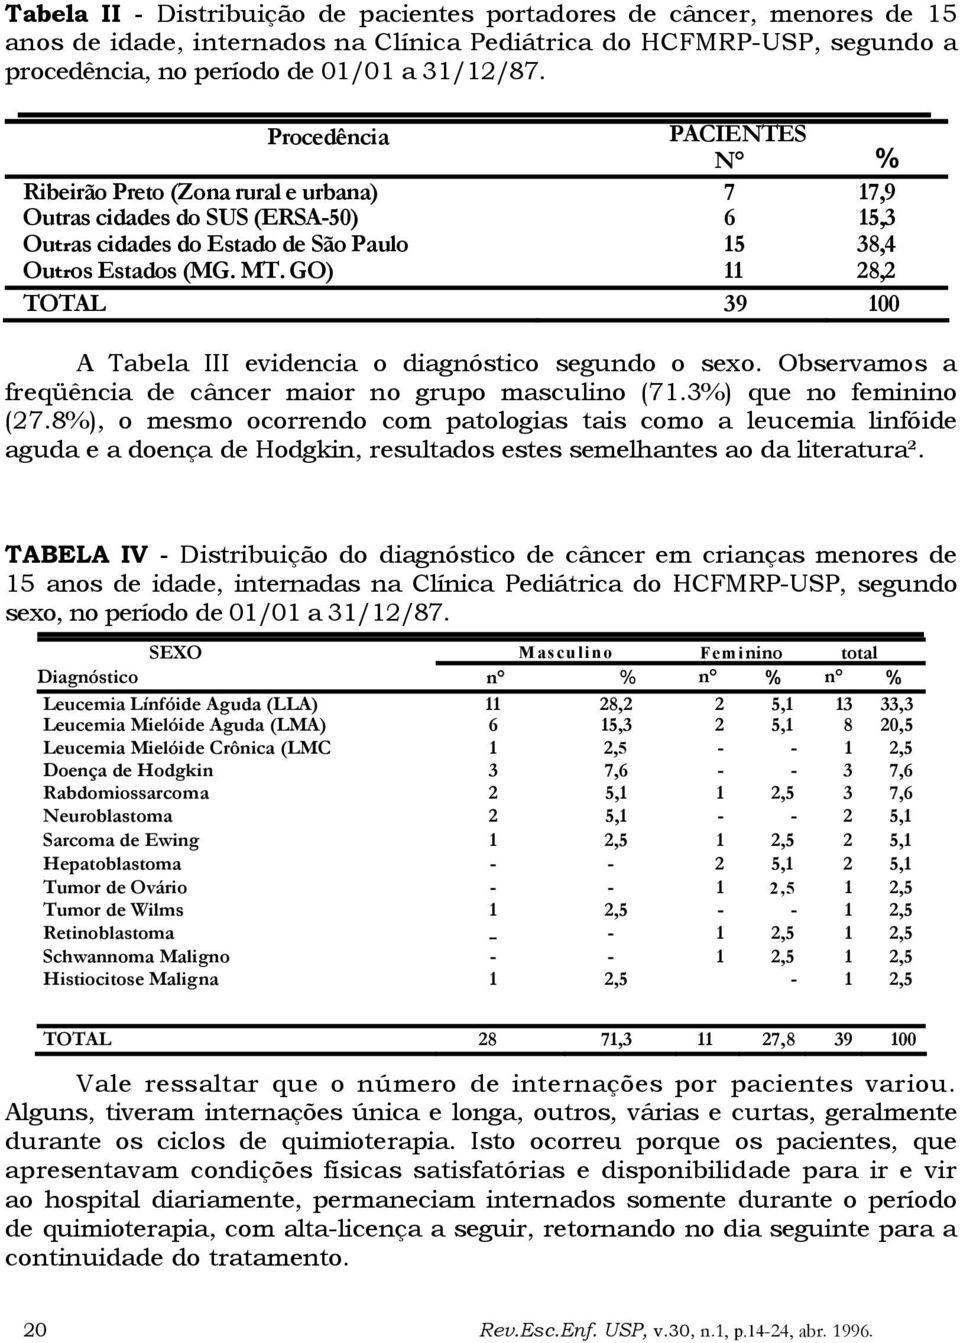 GO) 11 28,2 TOTAL 39 100 A Tabela III evidencia o diagnóstico segundo o sexo. Observamos a freqüência de câncer maior no grupo masculino (71.3%) que no feminino (27.